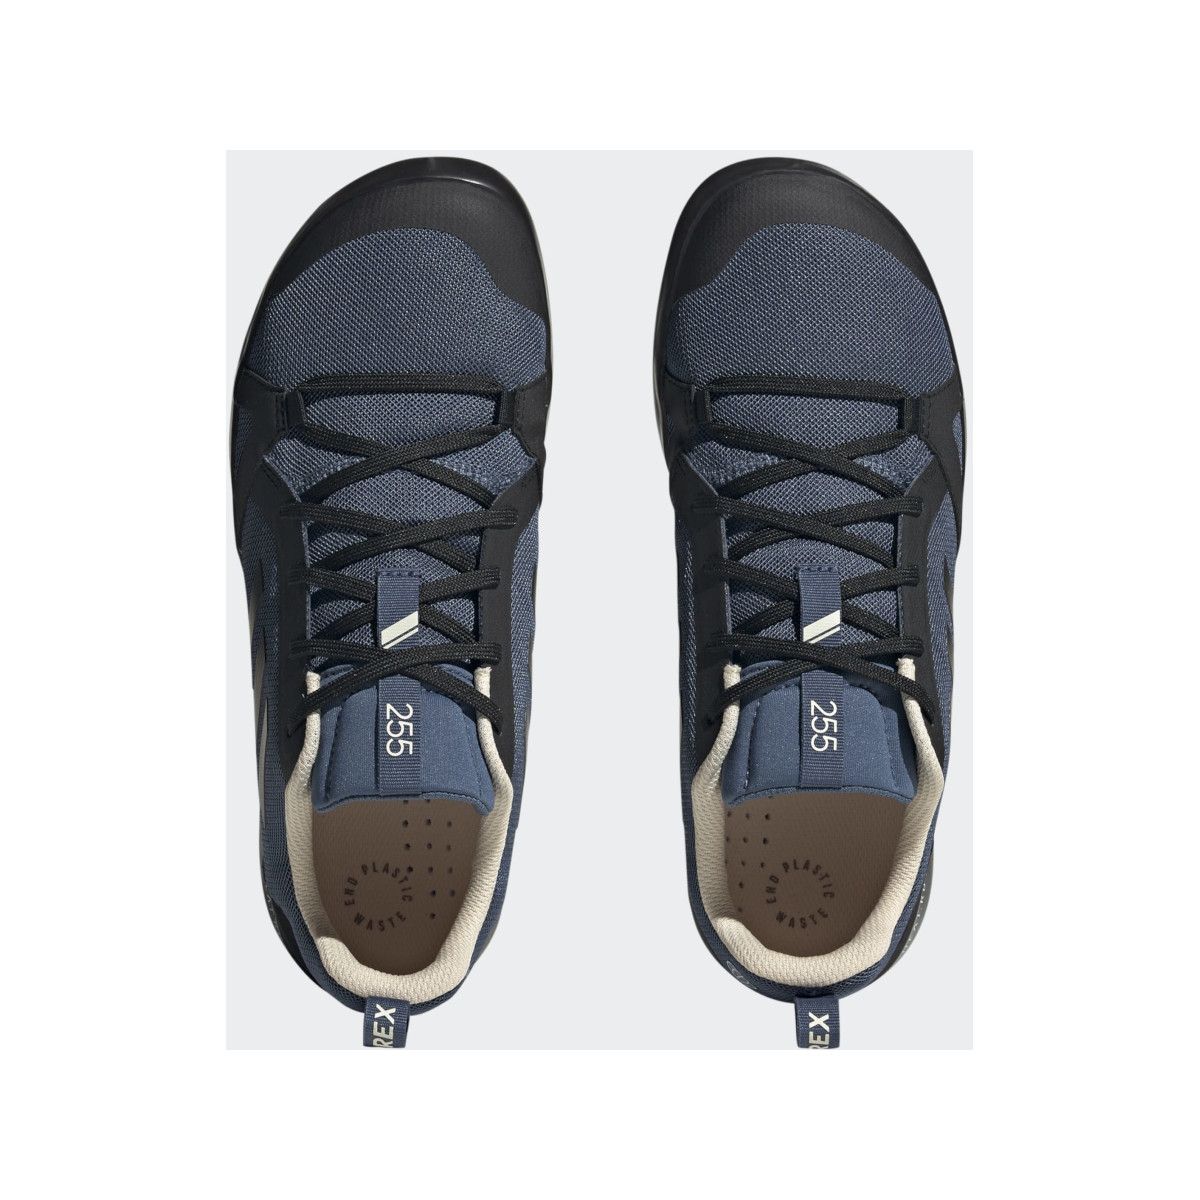 Adidas Boot Lace bootschoen heren zwart-blauw, maat 41 1/3